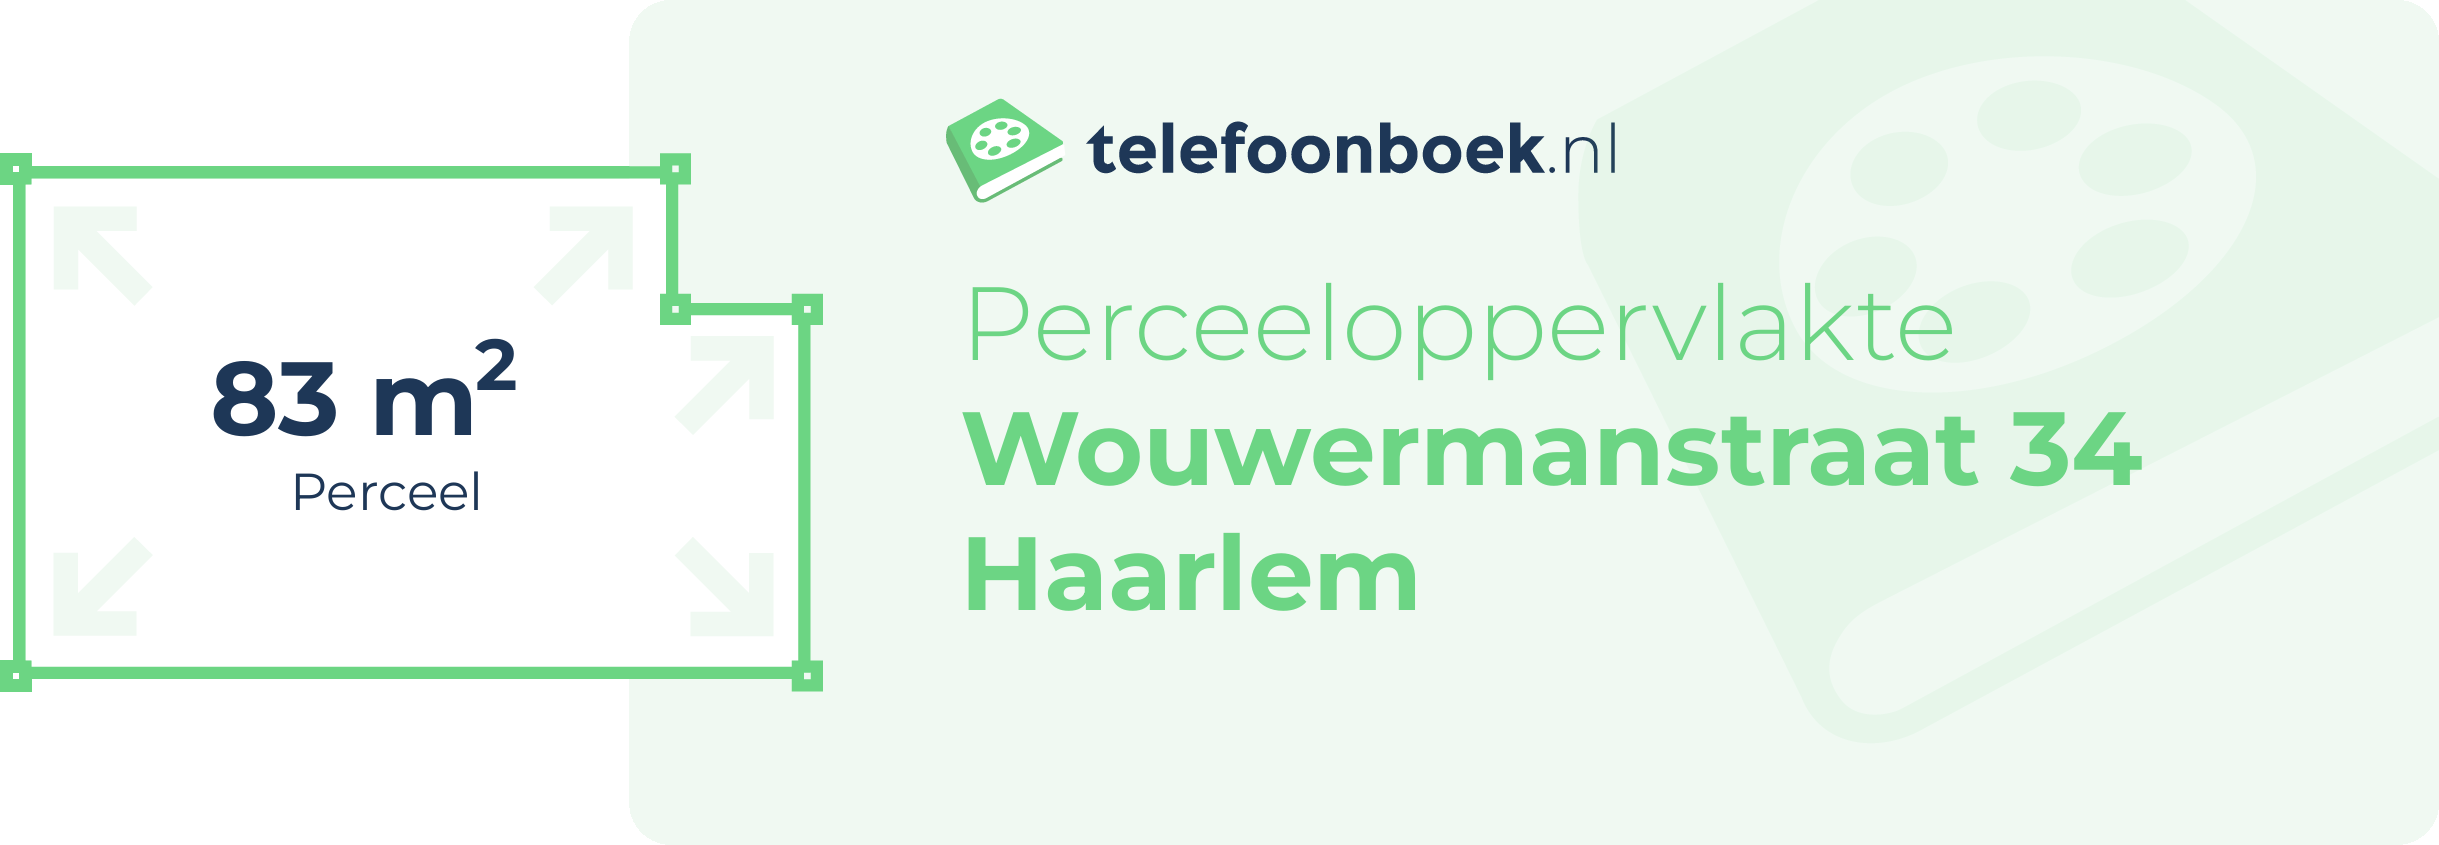 Perceeloppervlakte Wouwermanstraat 34 Haarlem